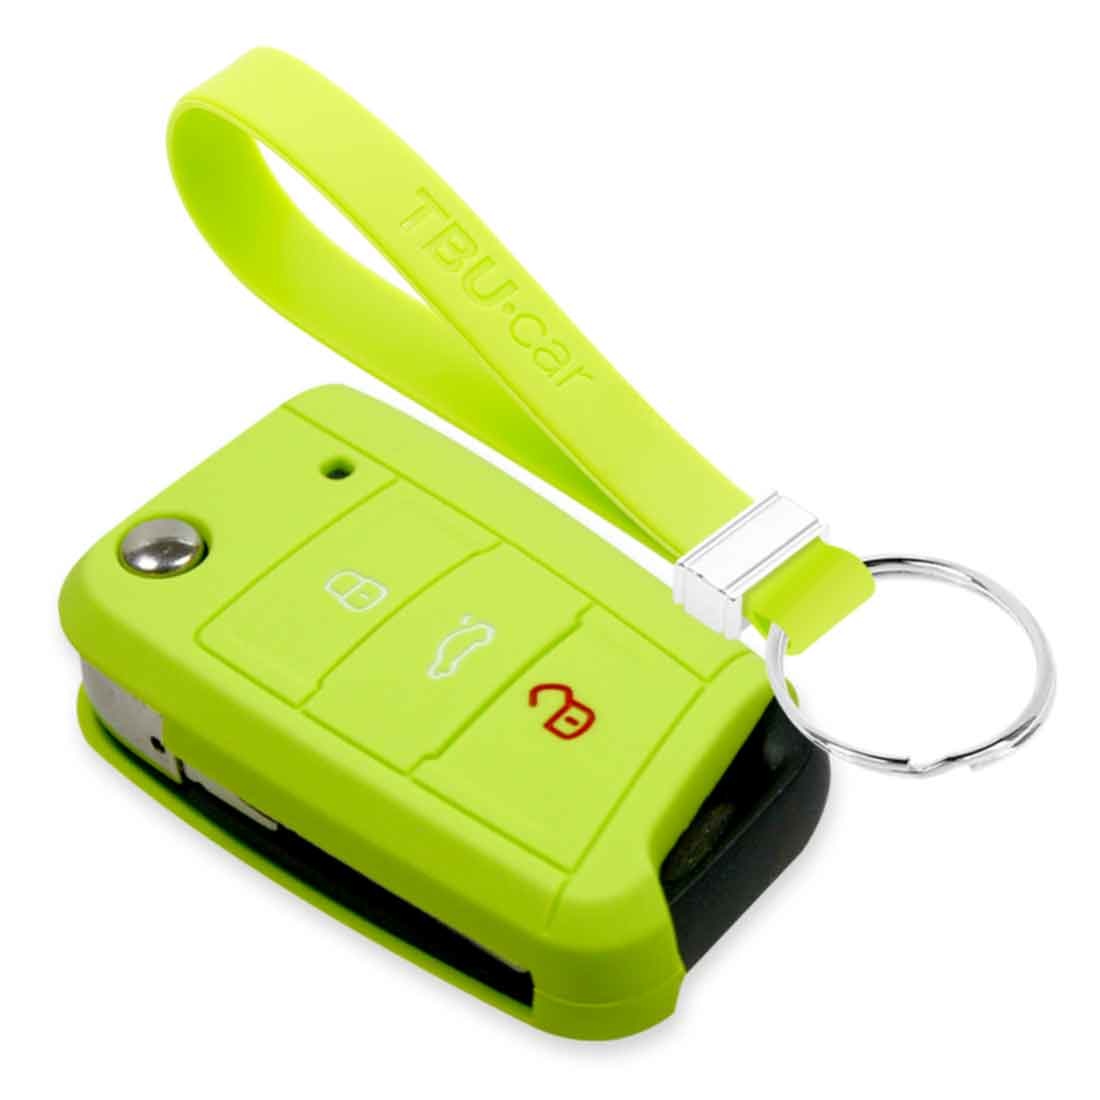 TBU car TBU car Sleutel cover compatibel met Skoda - Silicone sleutelhoesje - beschermhoesje autosleutel - Lime groen